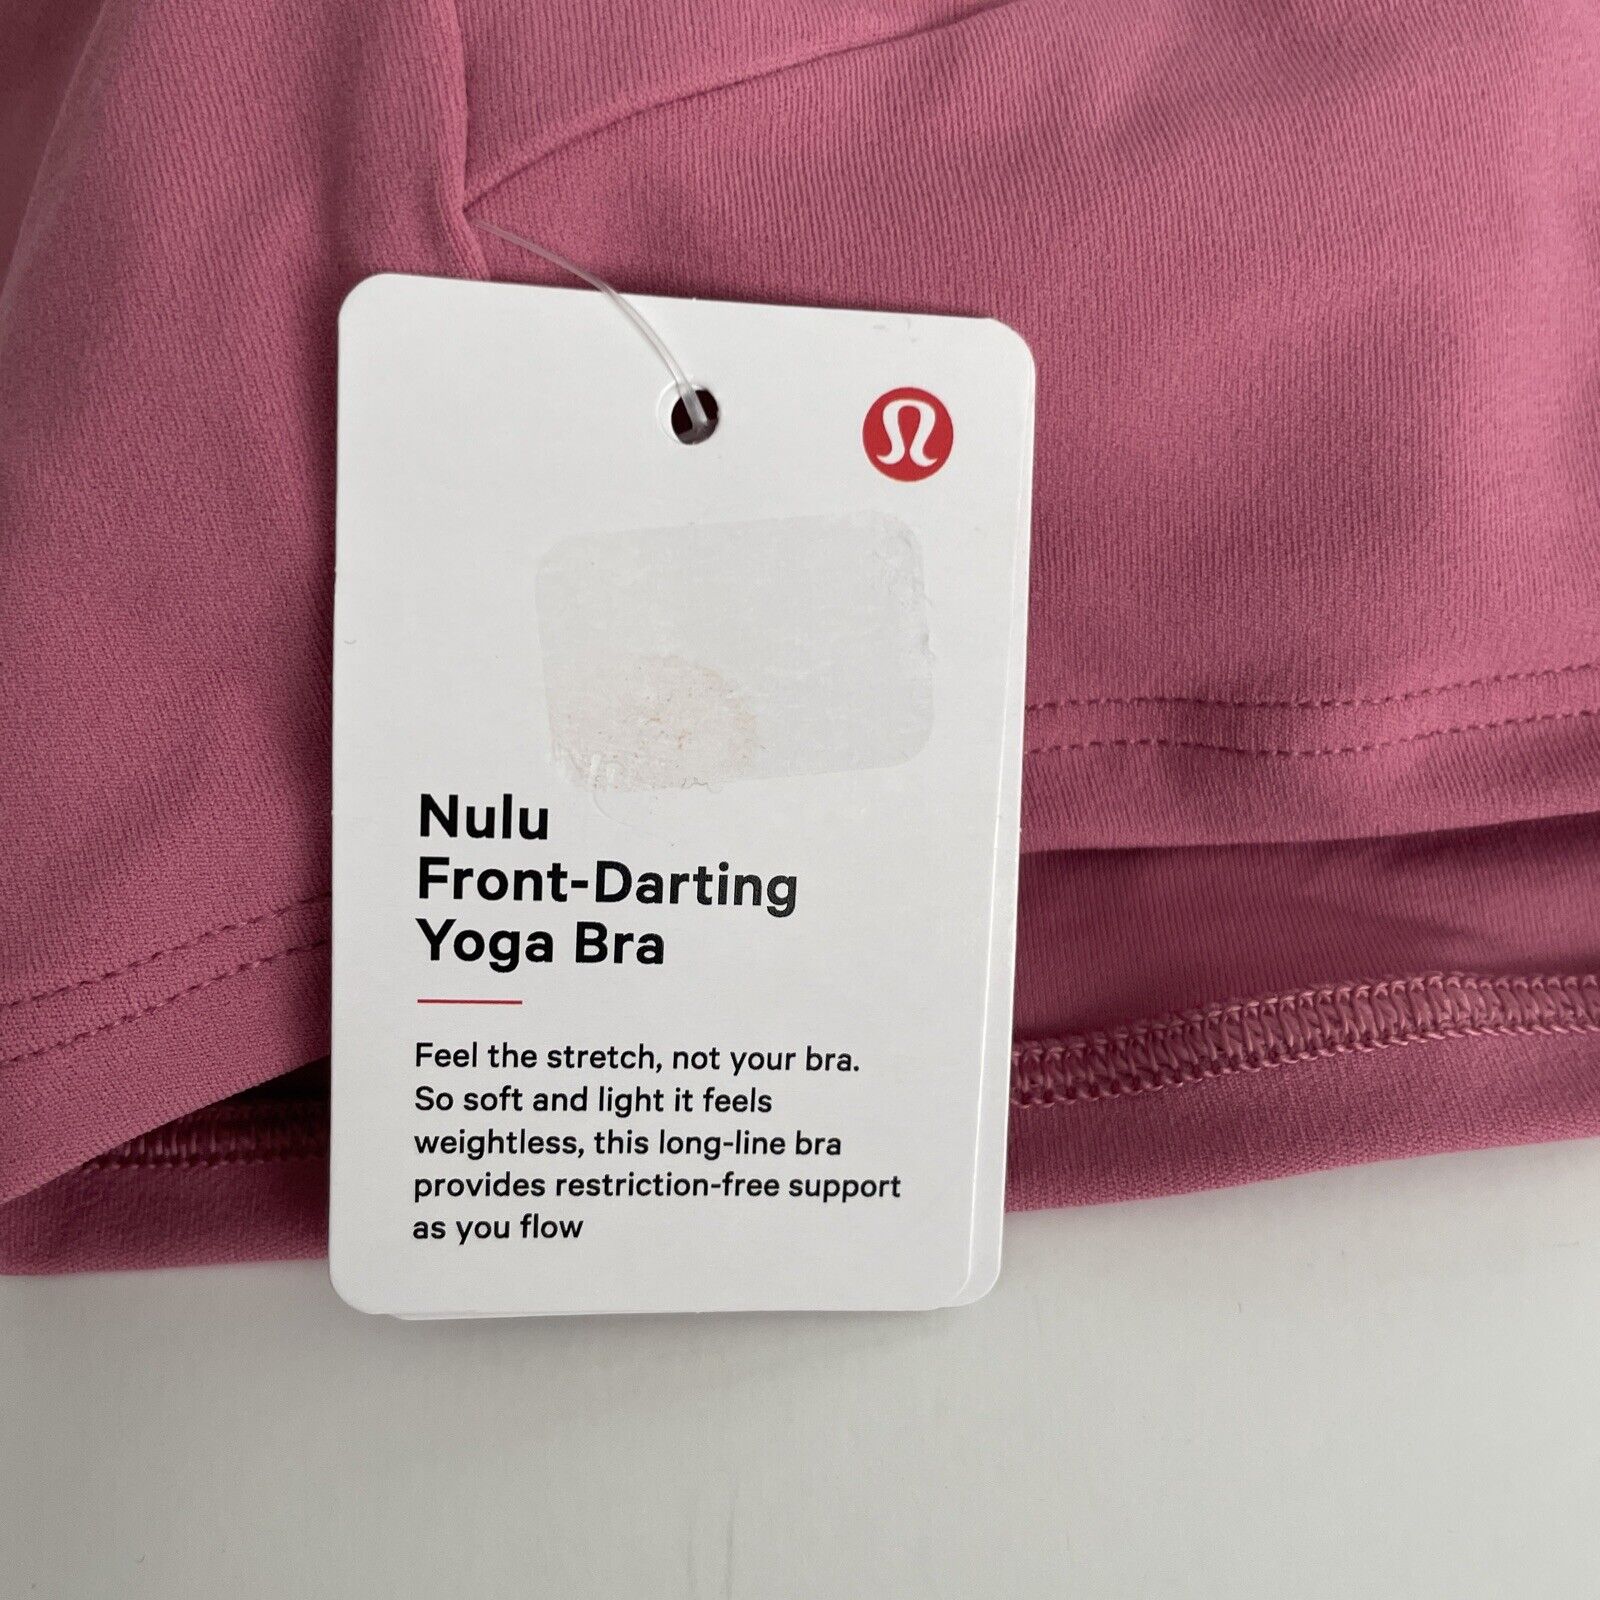 Lululemon Nulu Front Darting Yoga Bra size 4 PBOL Pink Blossom Lt